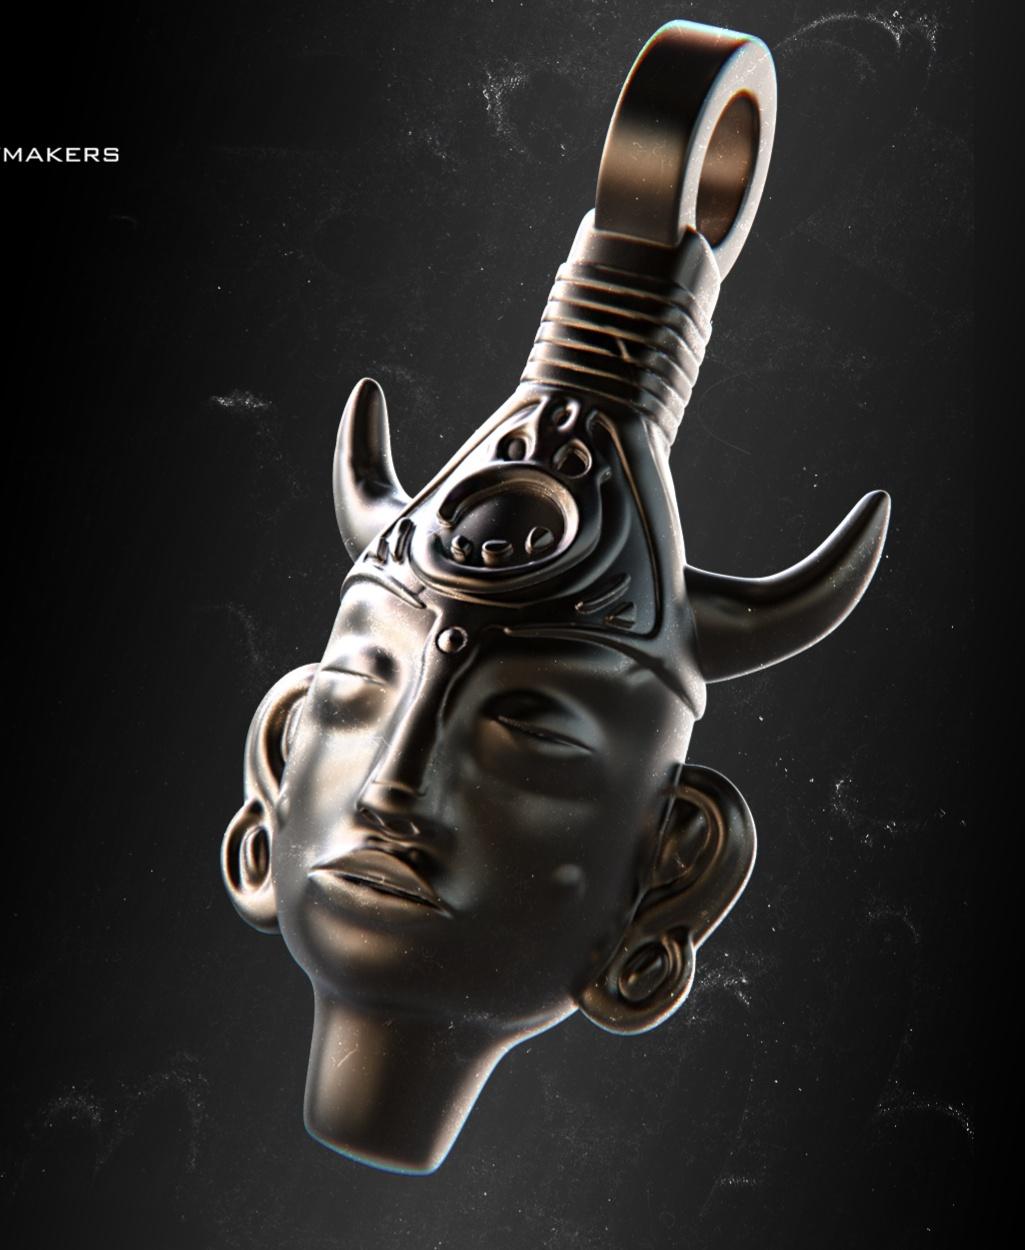 Dean Winchester's God finding amulet - Supernatural 3d model